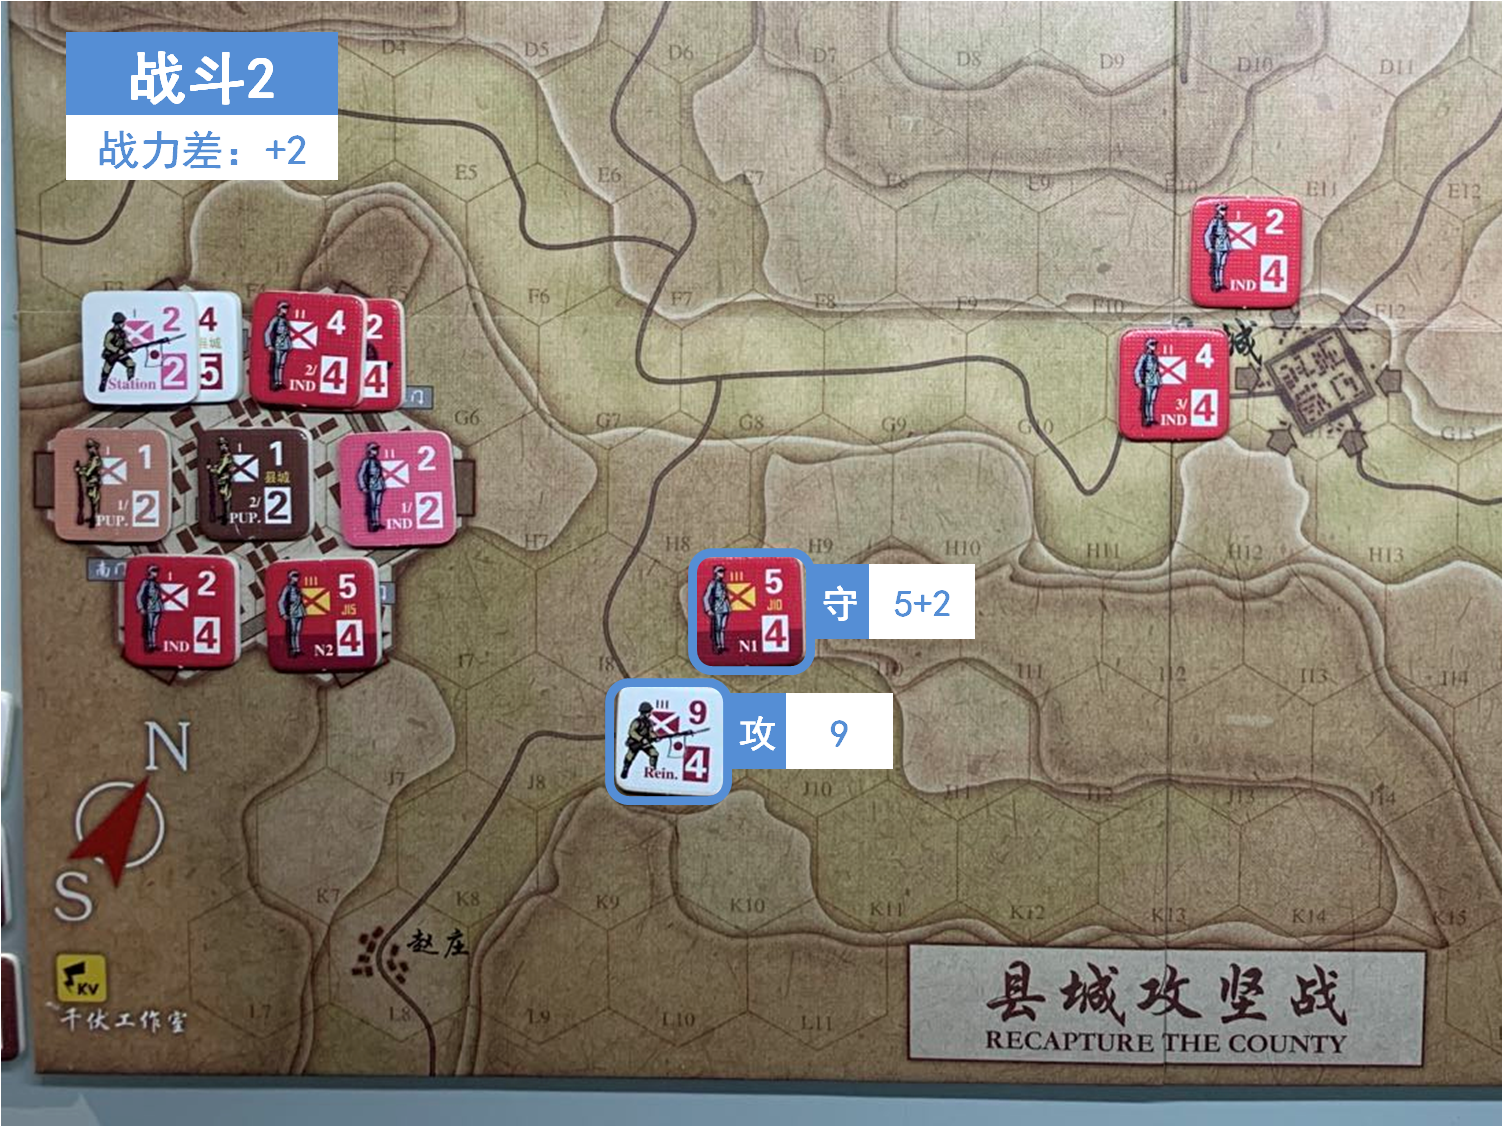 第二回合 日方战斗阶段 战斗2 战斗力差值